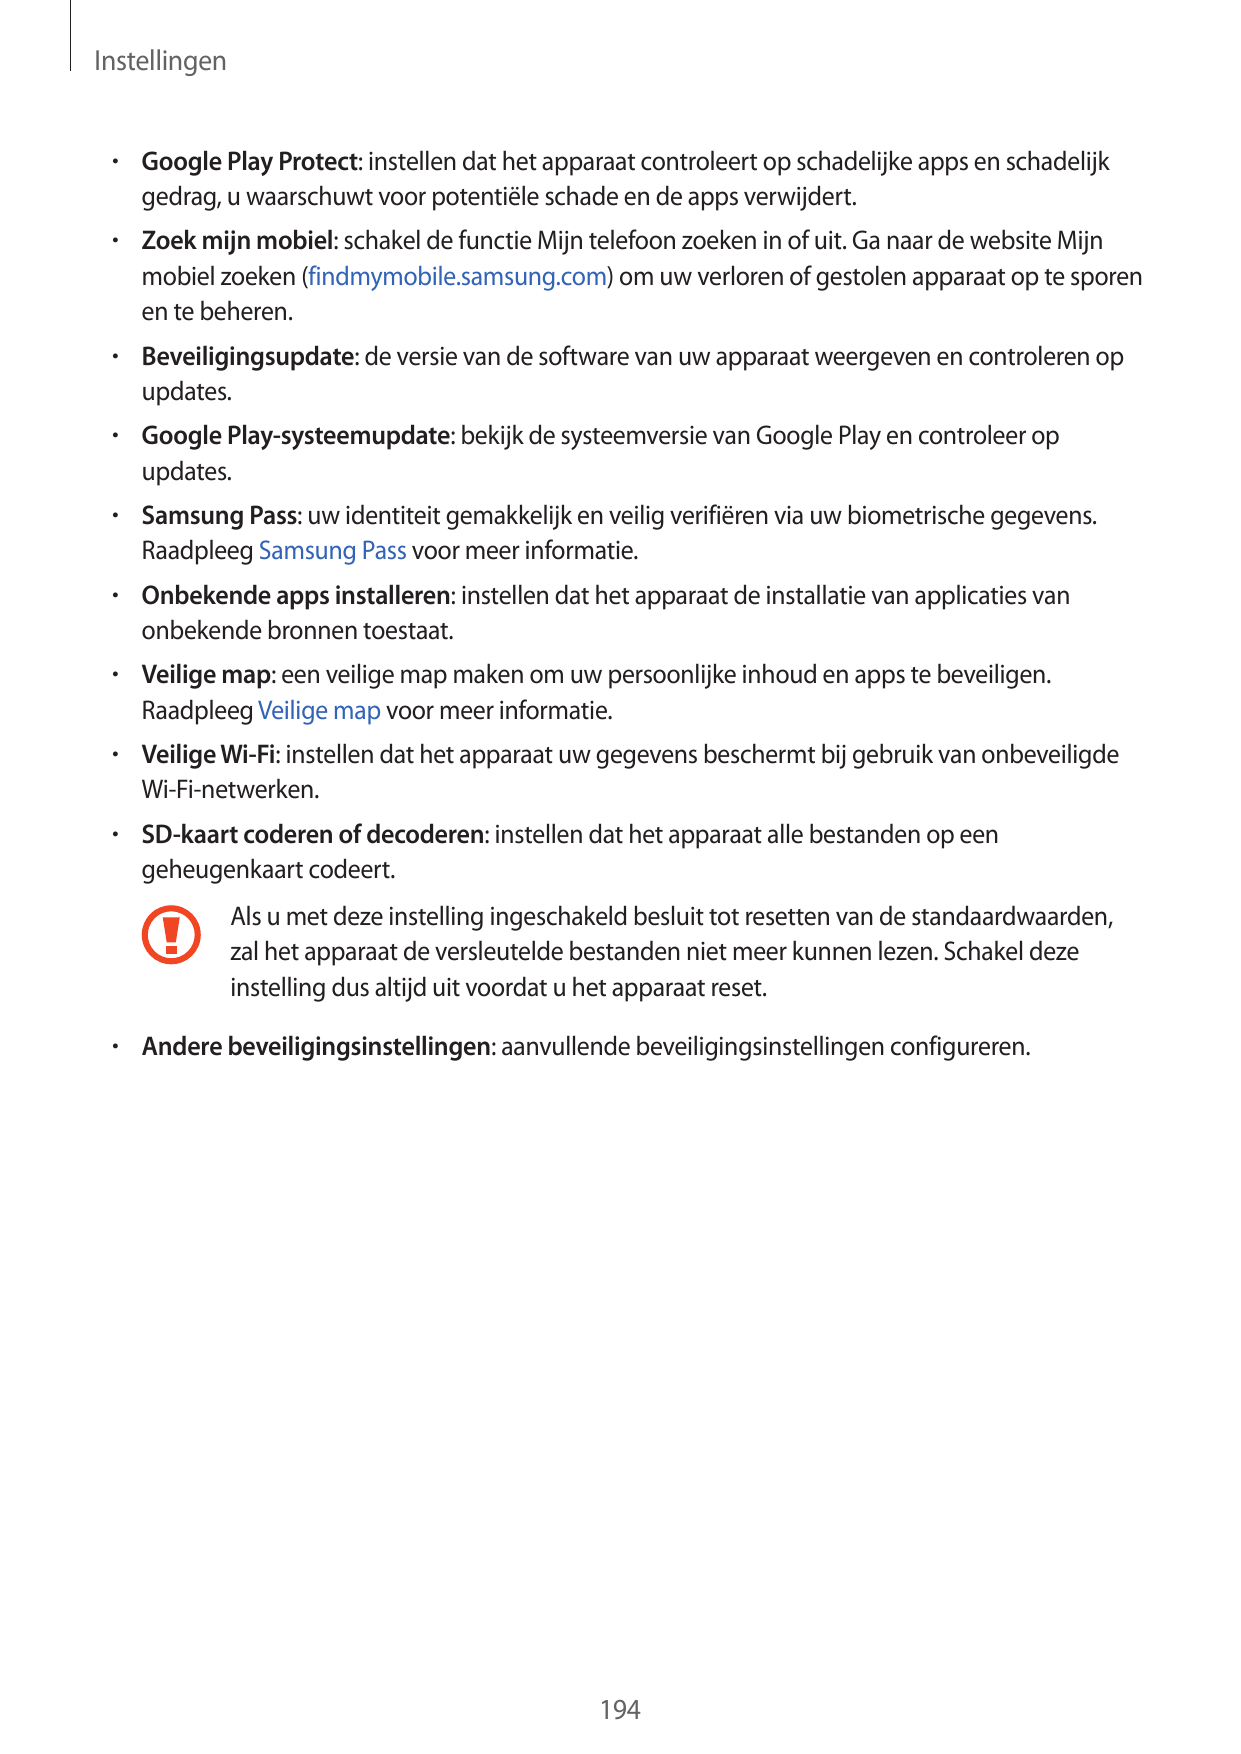 Instellingen• Google Play Protect: instellen dat het apparaat controleert op schadelijke apps en schadelijkgedrag, u waarschuwt 